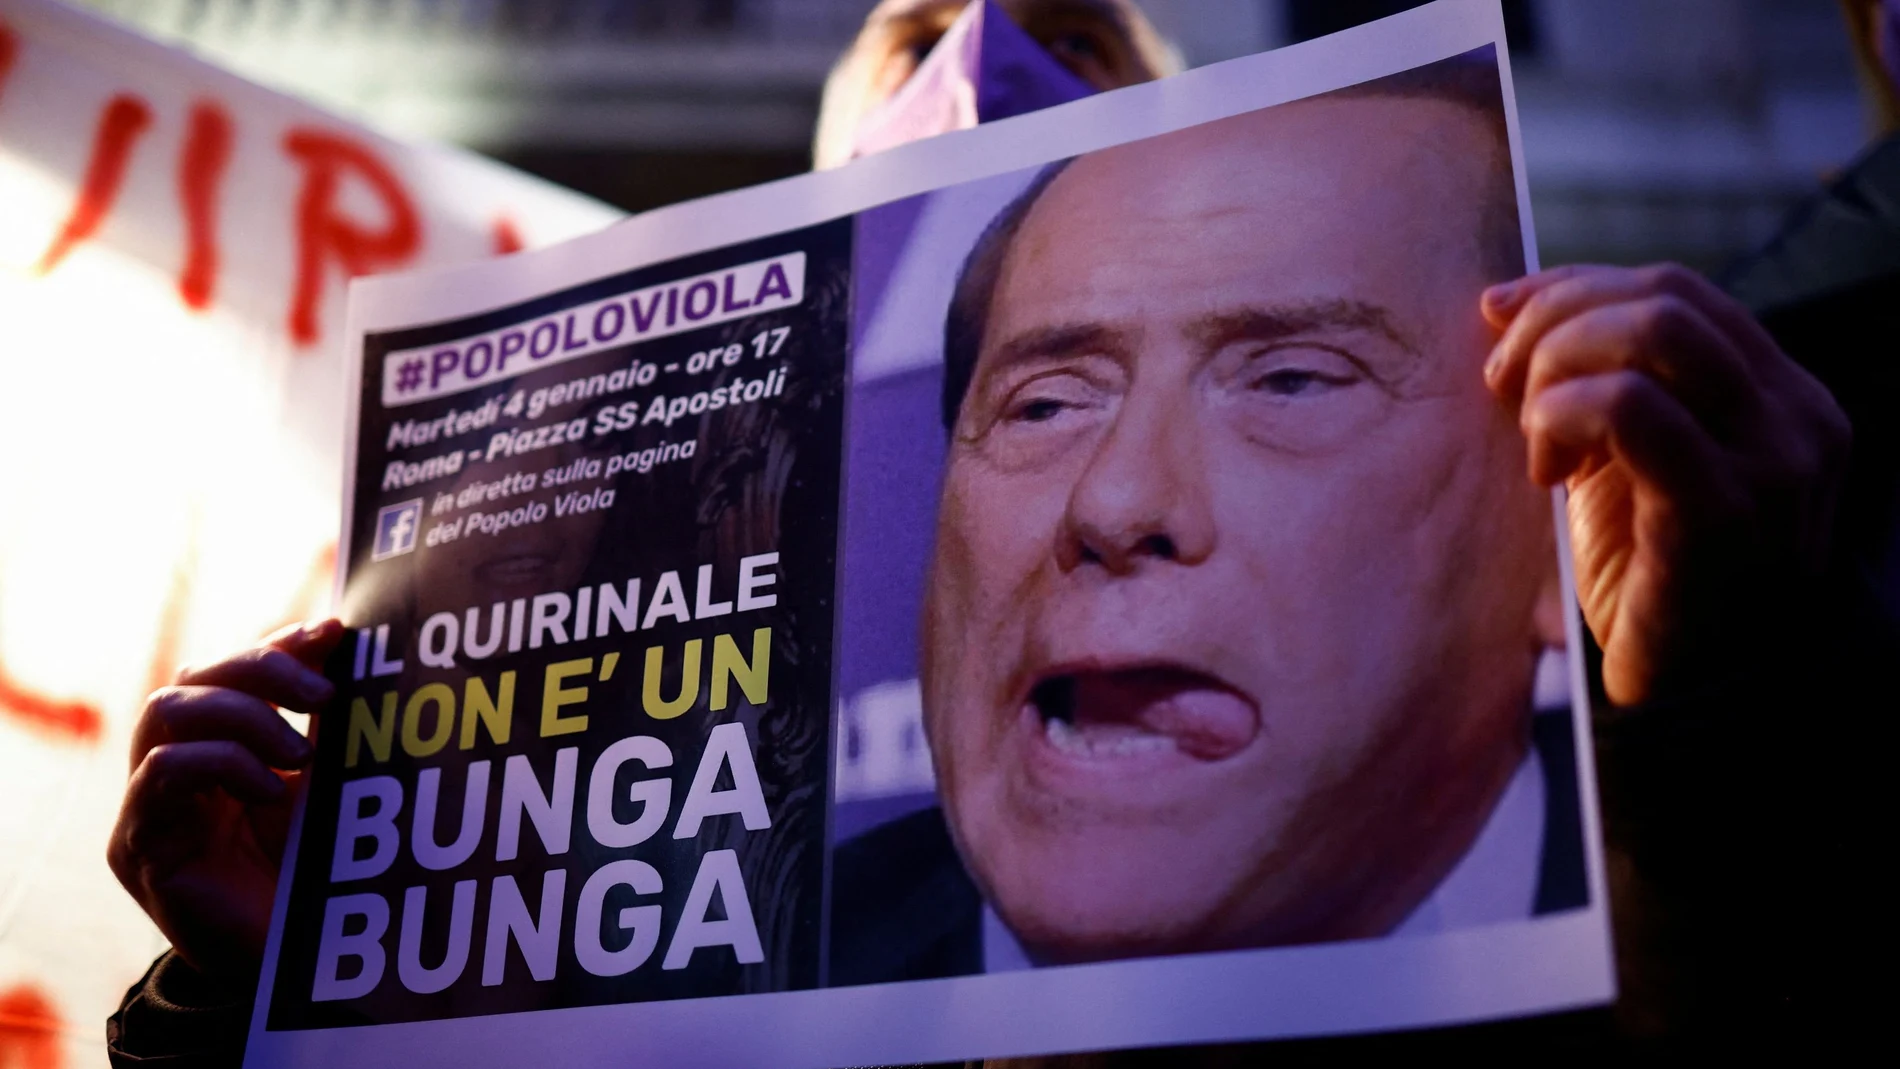 El "Quirinal no es un Bunga Bunga": protestas en Roma contra la candidatura del ex primer ministro Silvio Berlusconi a la presidencia de Italia